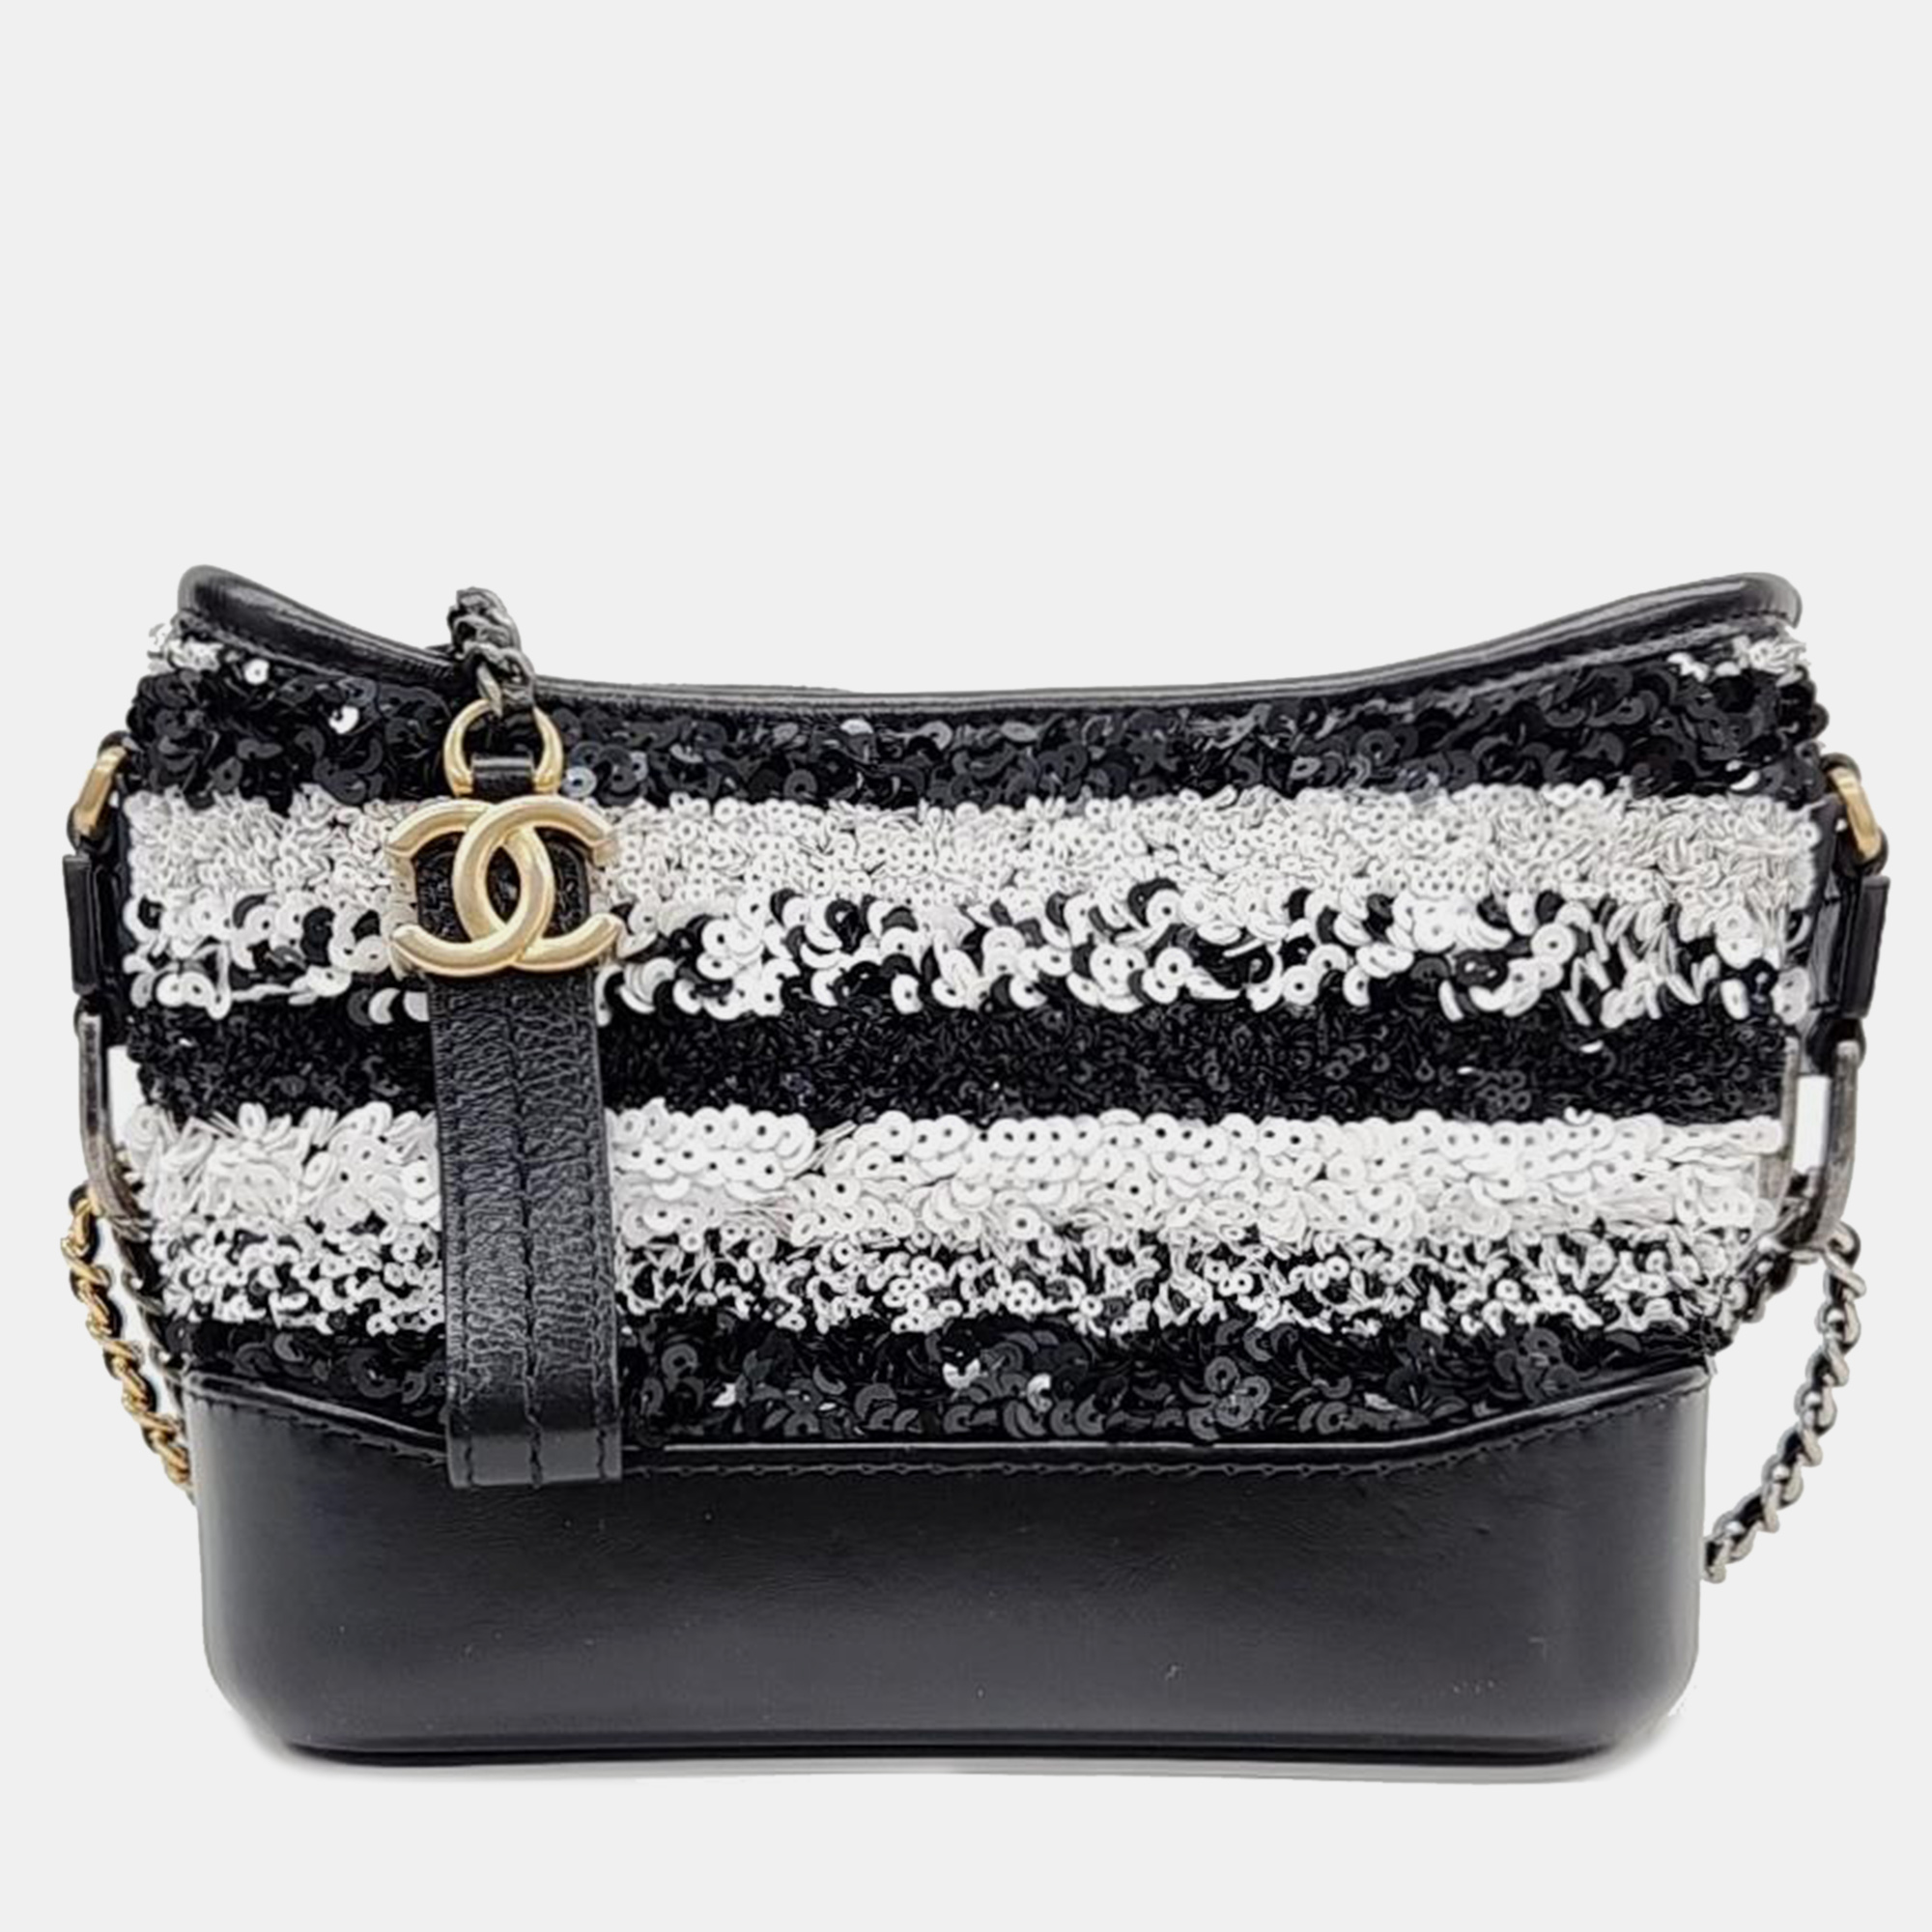 Chanel spangle gabriel small hobo bag